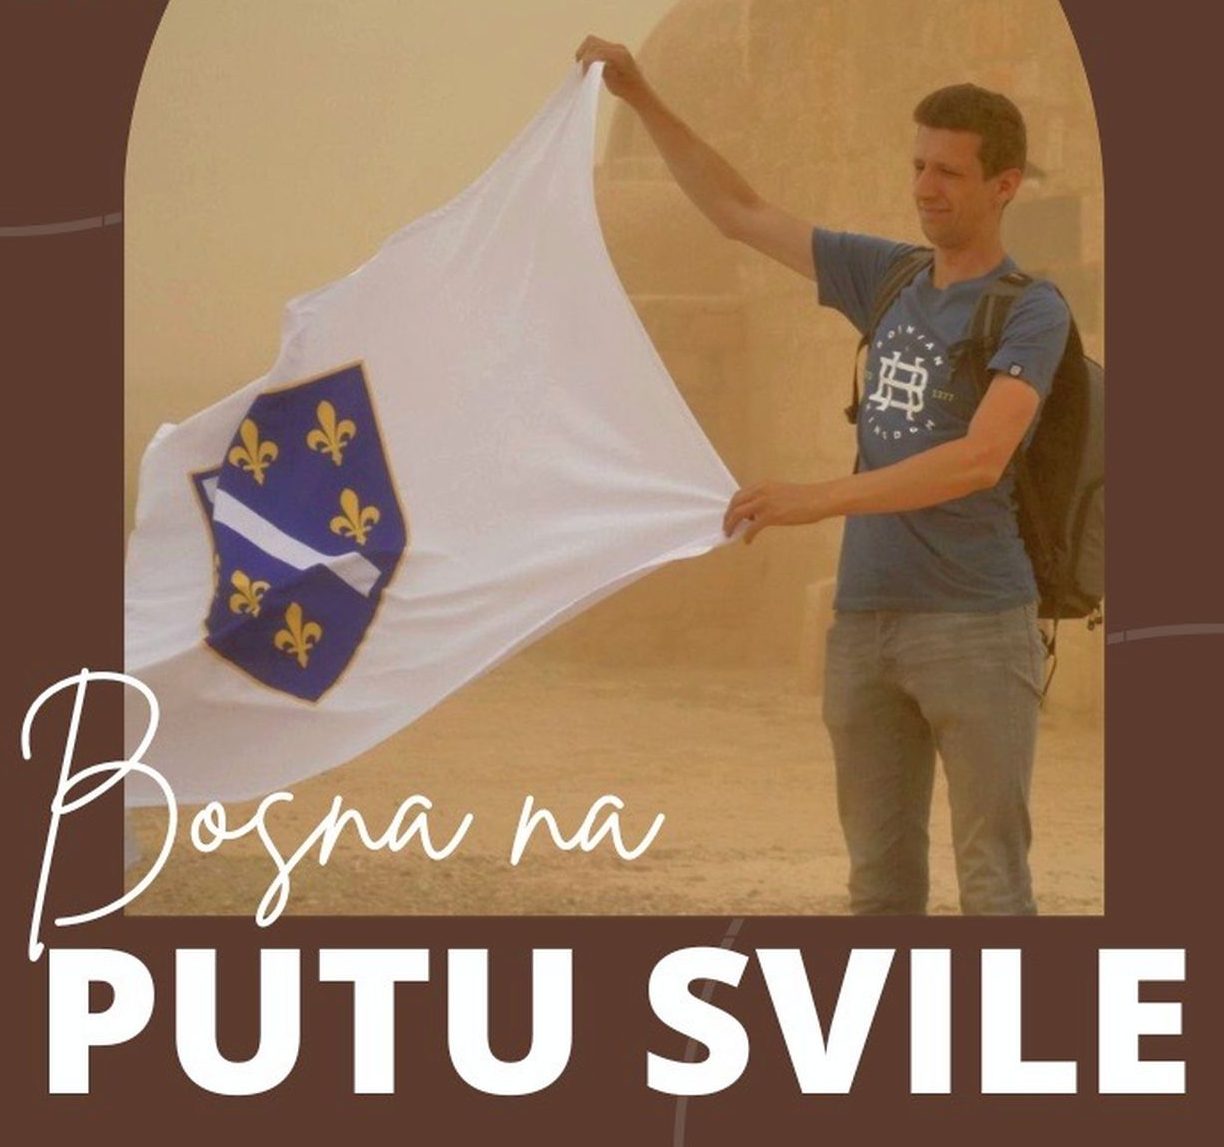 Bosna na putu svile